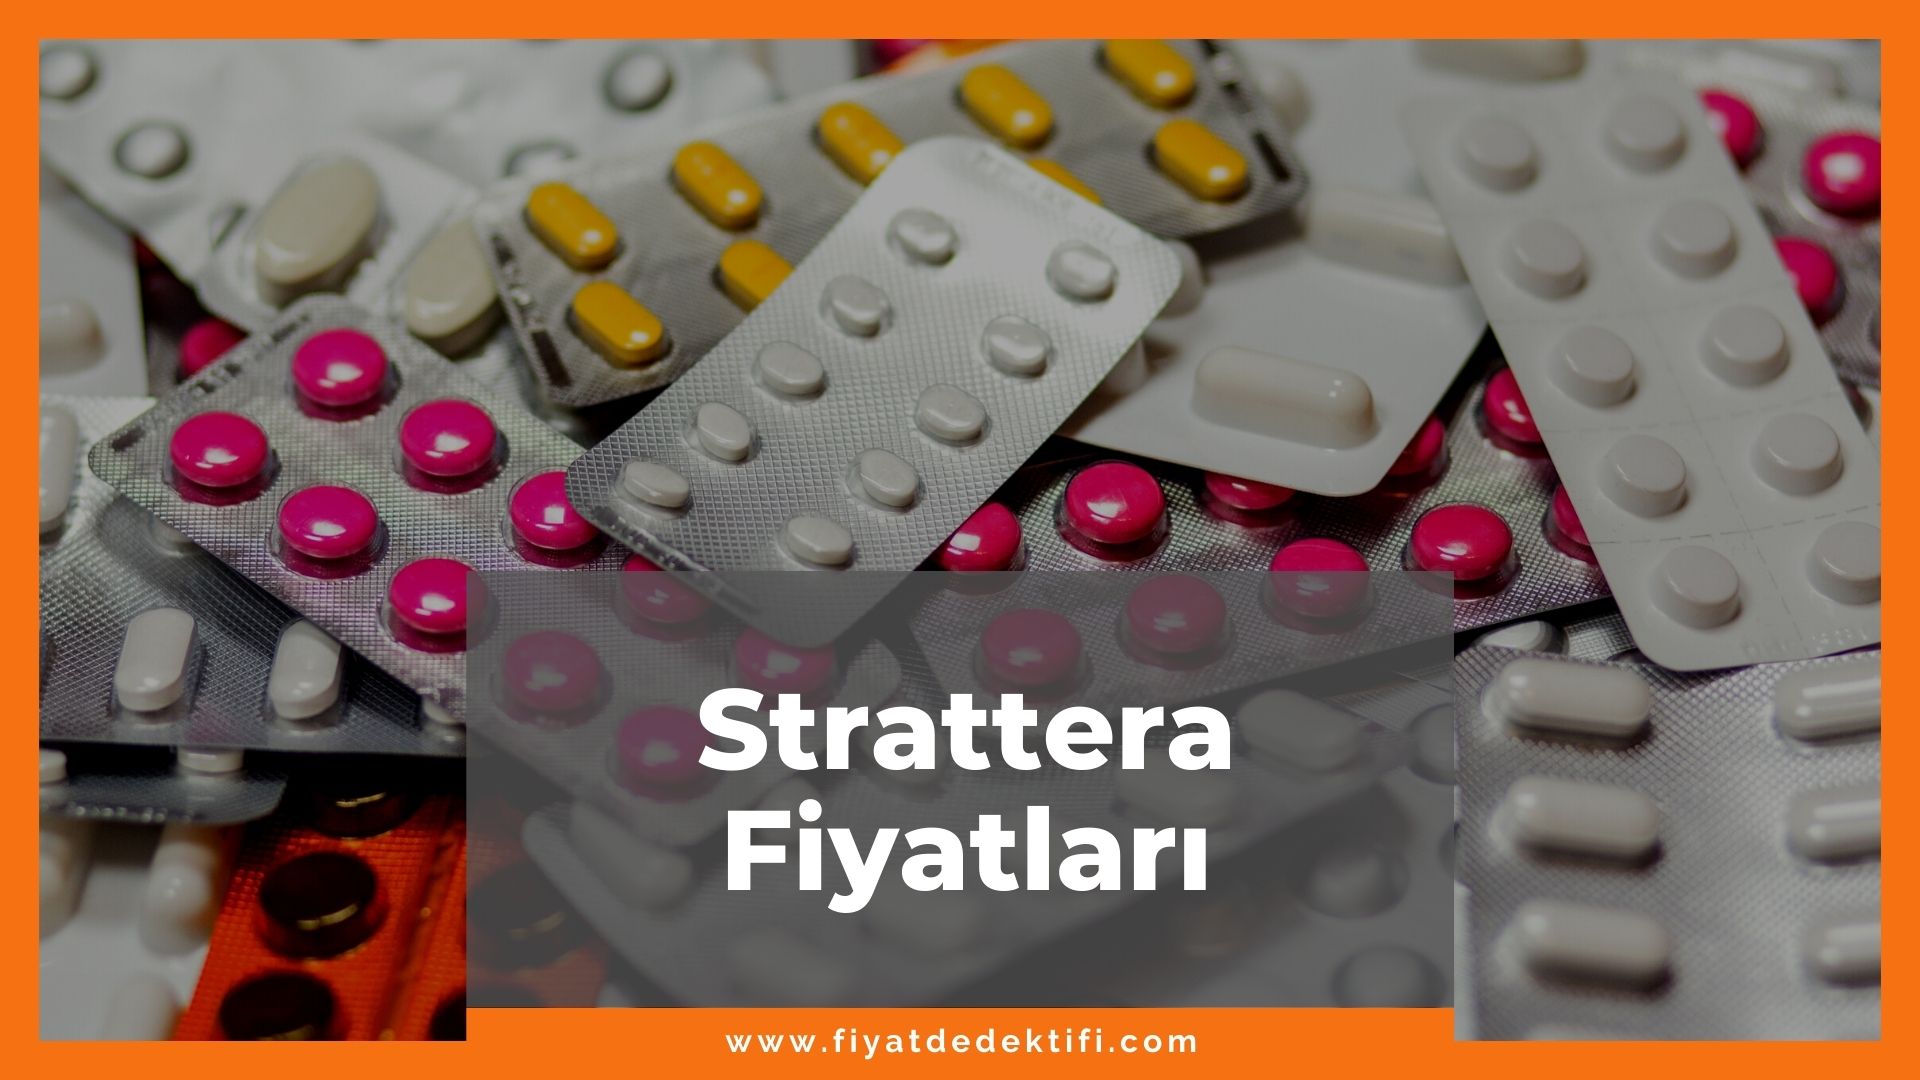 Strattera Fiyat 2021, Strattera 10 mg, 25 mg Fiyatı, strattera zamlandı mı, strattera zamlı fiyatı ne kadar kaç tl oldu